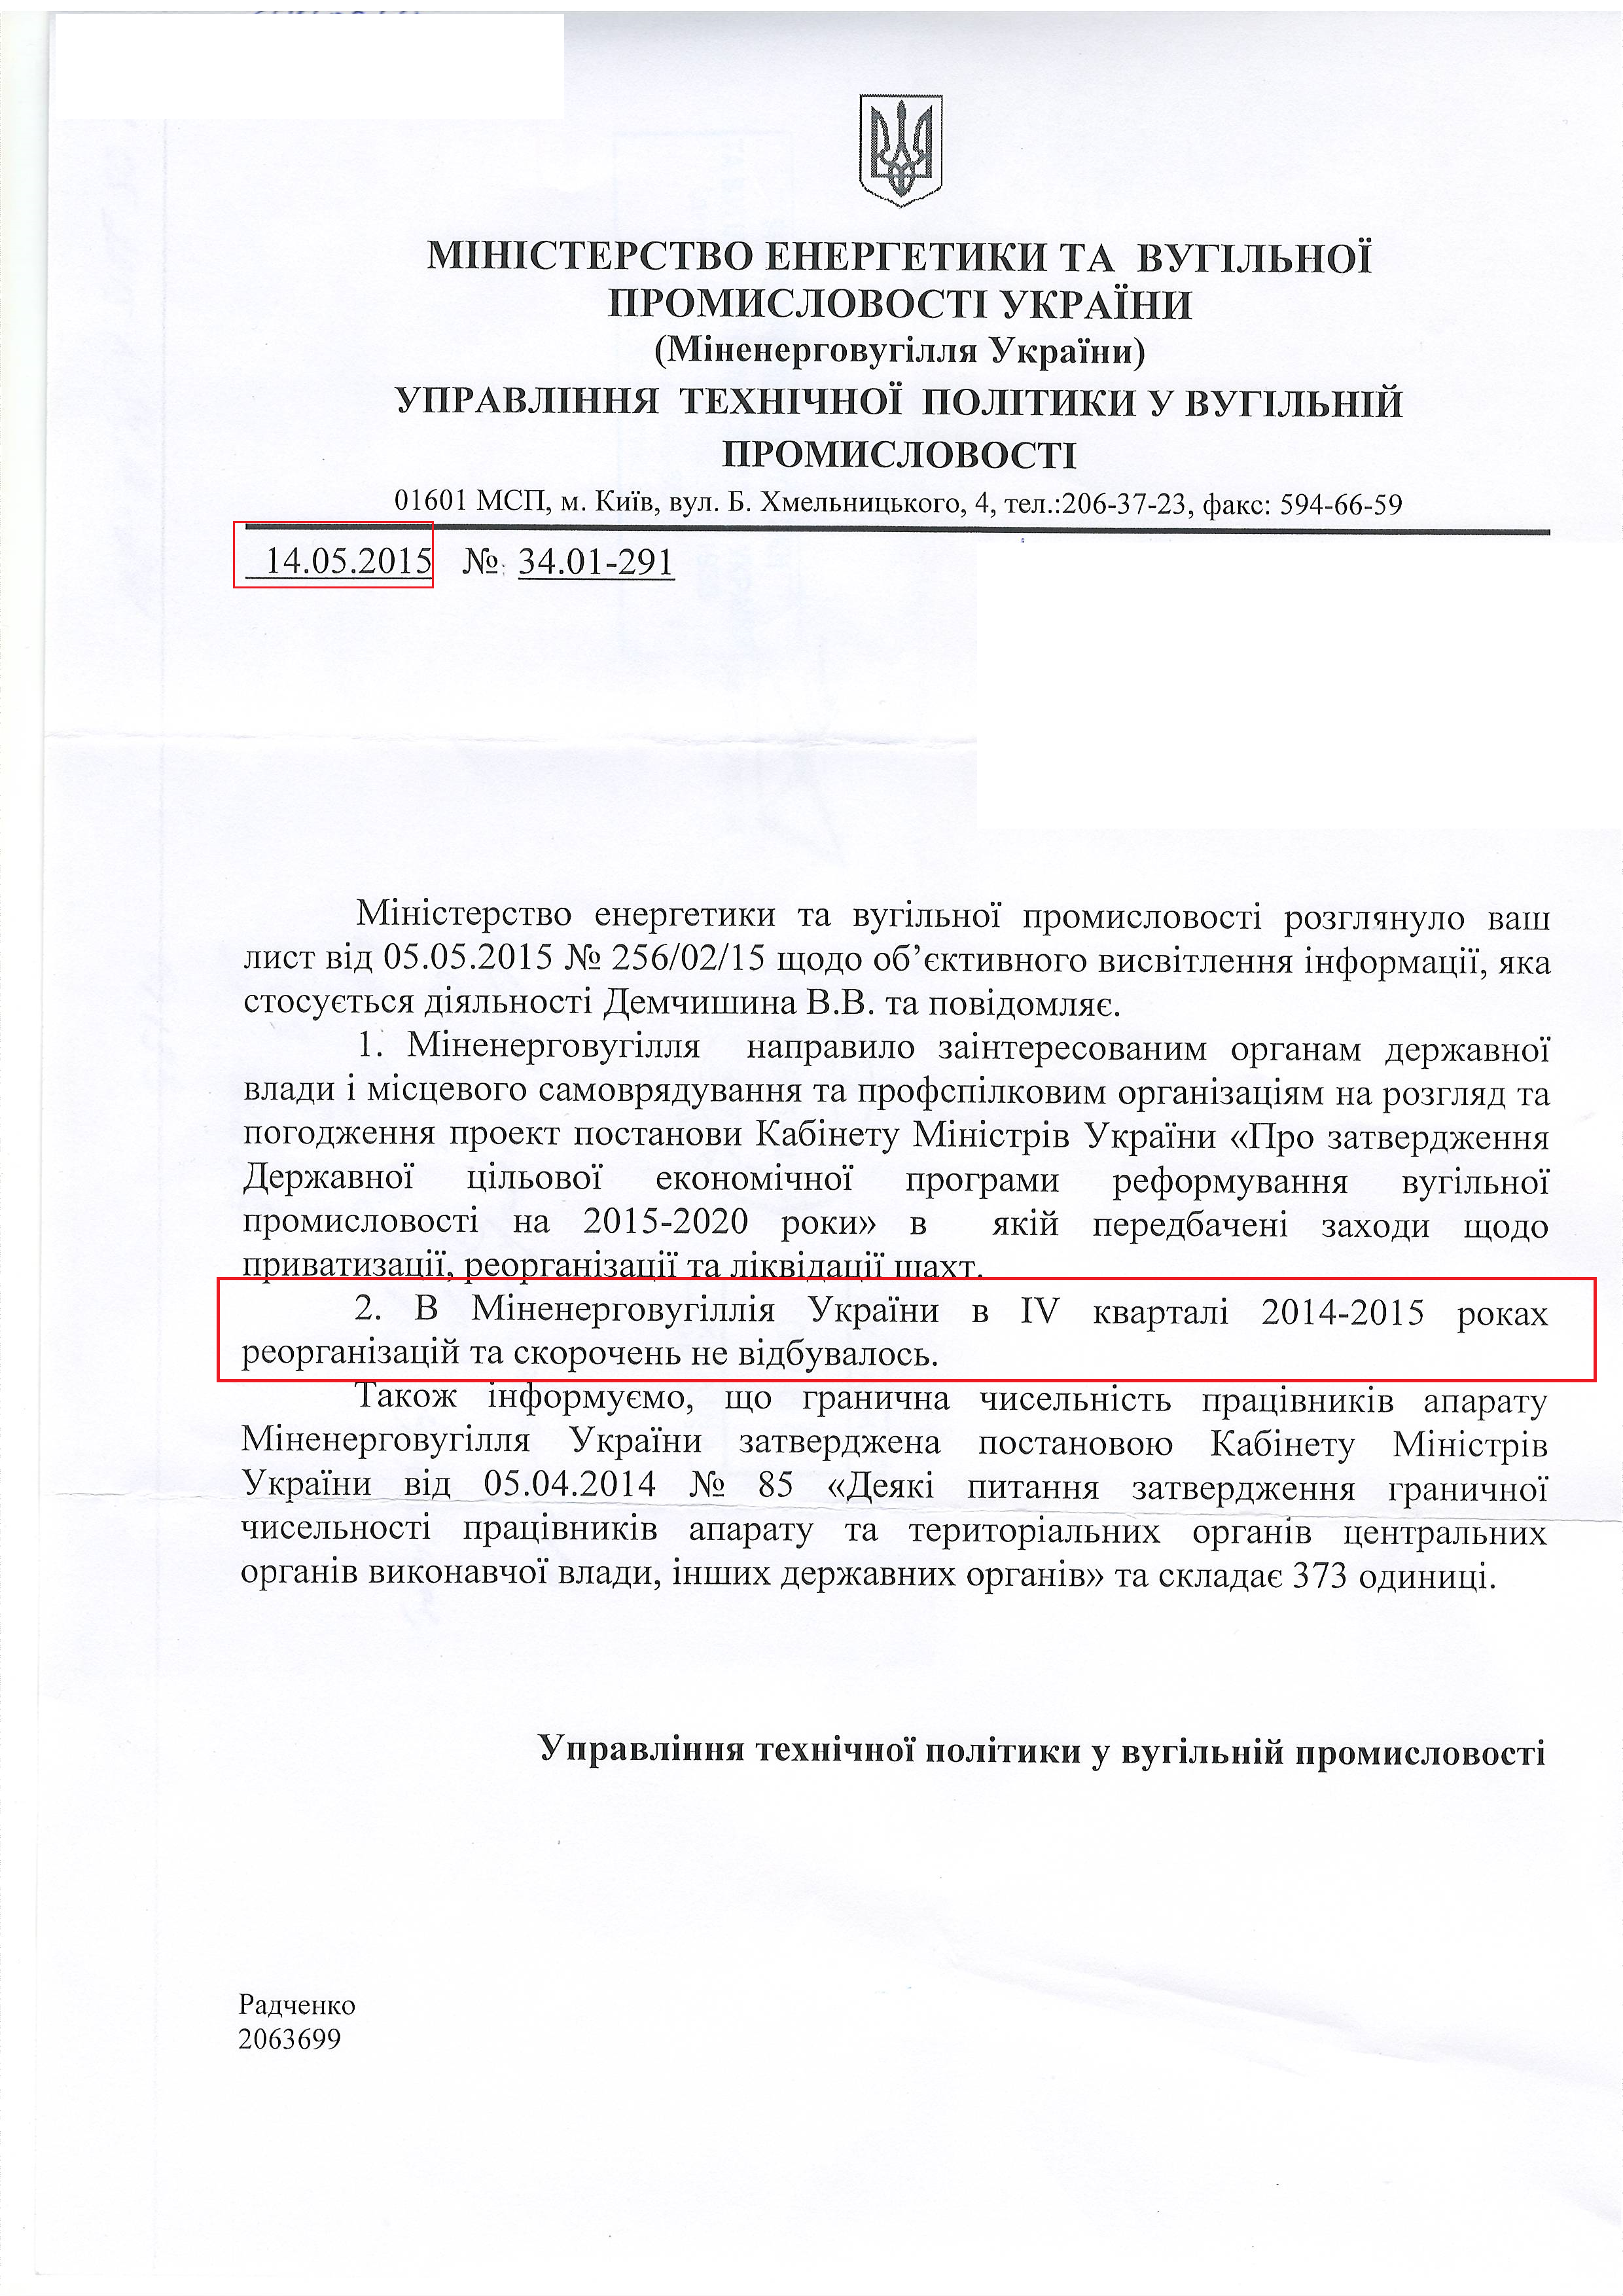 лист міністерства енергетики та вугільної промисловості України від 14 травня 2015 року